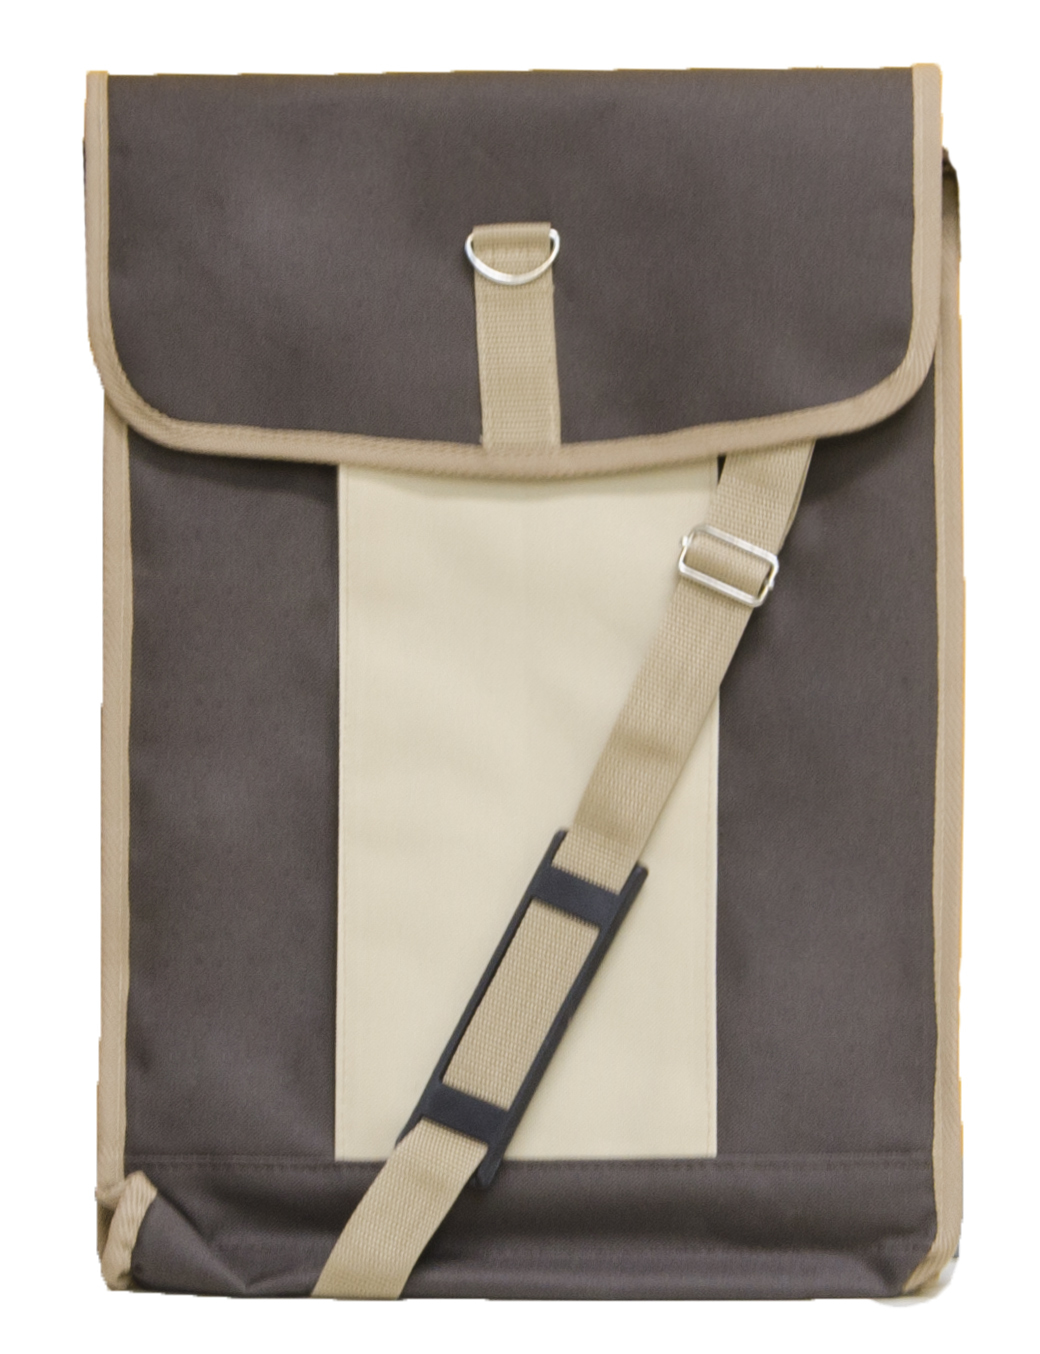 Сумка для планшета 42х30 (жест.) коричневая с бежевым карманом сумка c ручками nobo nbag j2100 c005